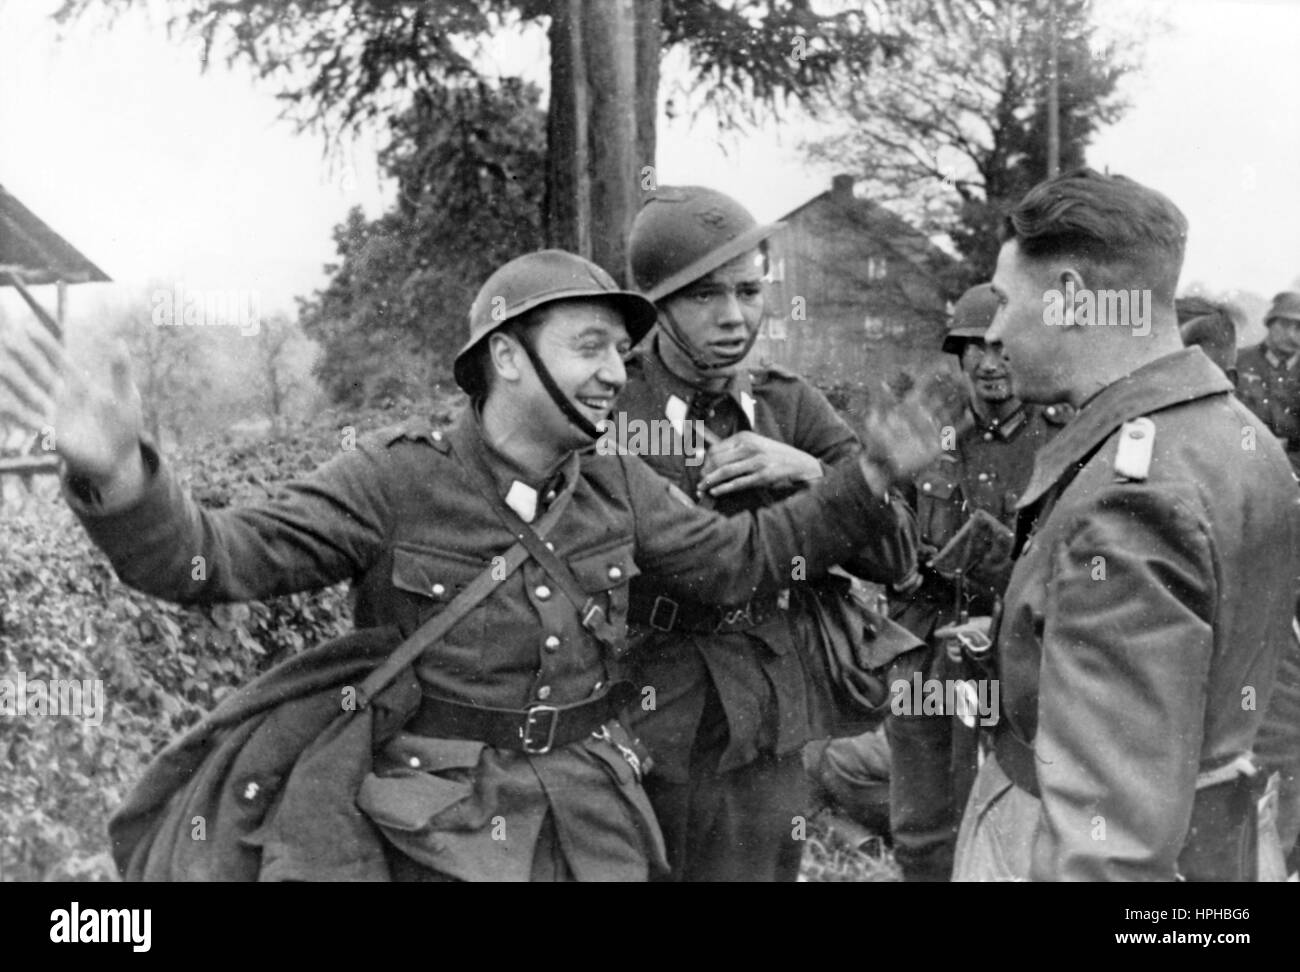 Das Bild der Nazi-Propaganda zeigt, wie belgische Soldaten während der Besetzung des Landes durch die deutsche Wehrmacht gefangen wurden. Veröffentlicht im Mai 1940. Fotoarchiv für Zeitgeschichte - NICHT FÜR DEN KABELDIENST - | weltweite Verwendung Stockfoto